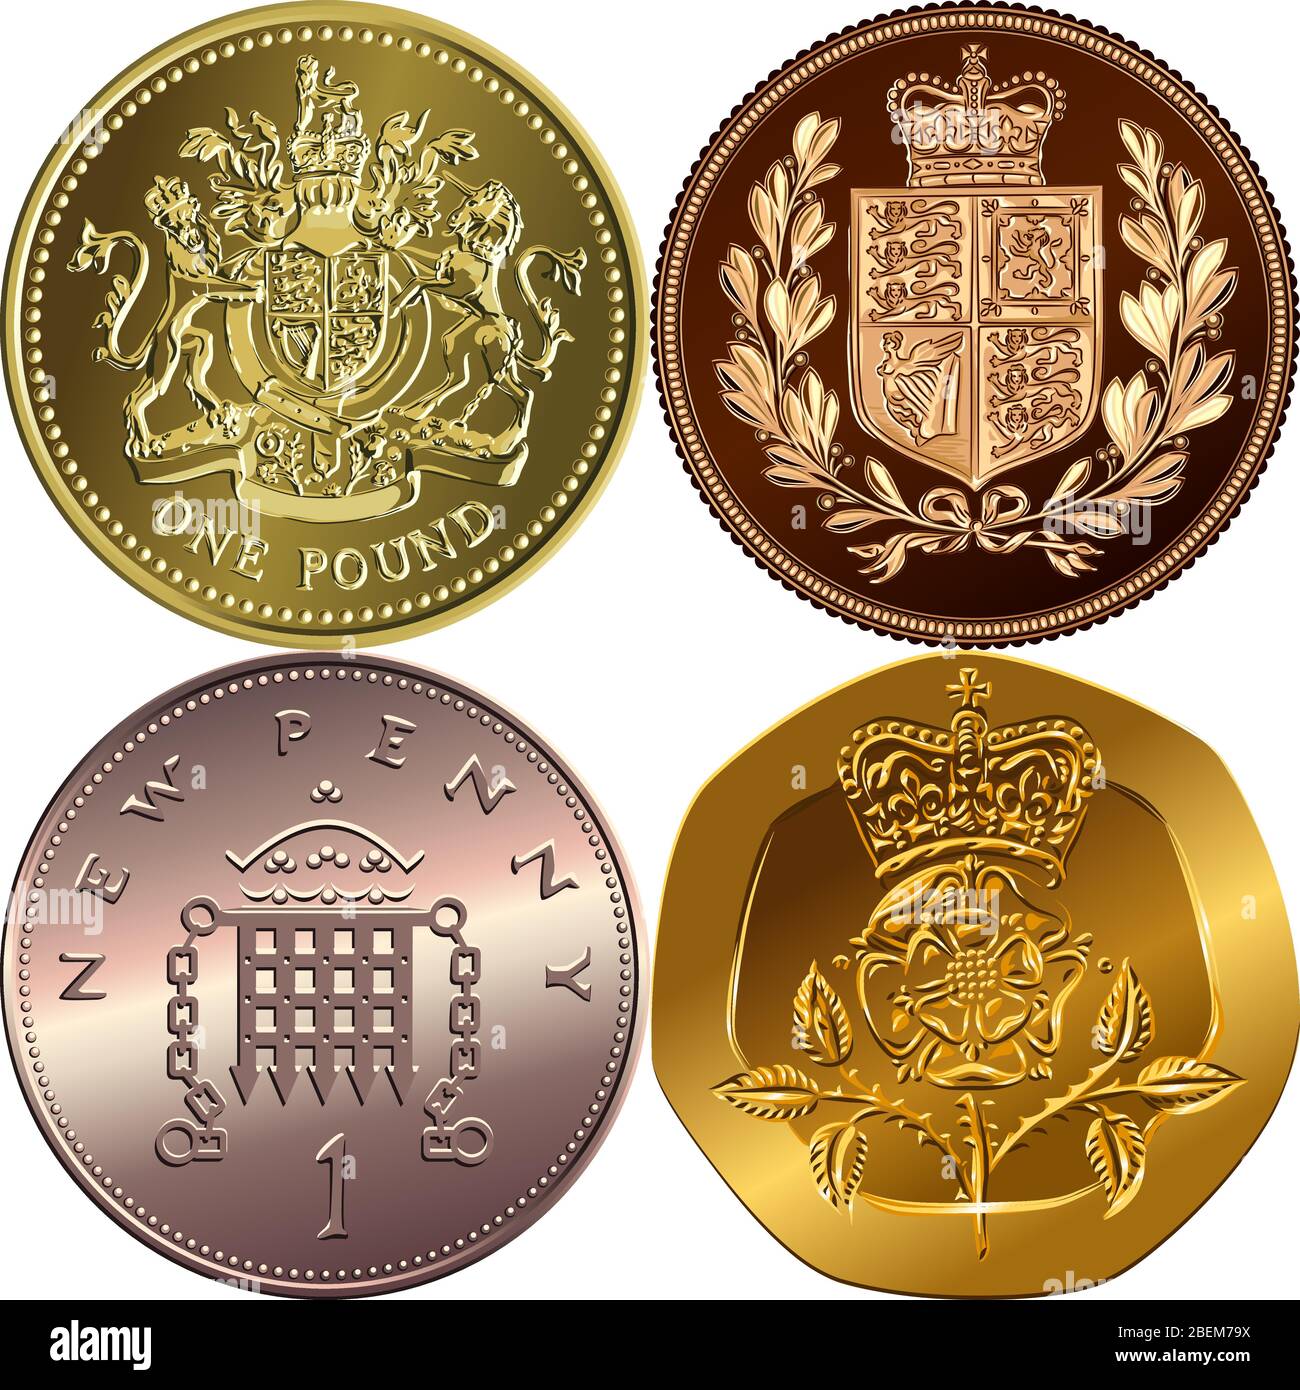 Moneda británica: Oro una libra esterlina, soberano con escudo de armas, bronce nuevo un penique con portcullis, veinte vallas con Rosa Tudor coronada Ilustración del Vector